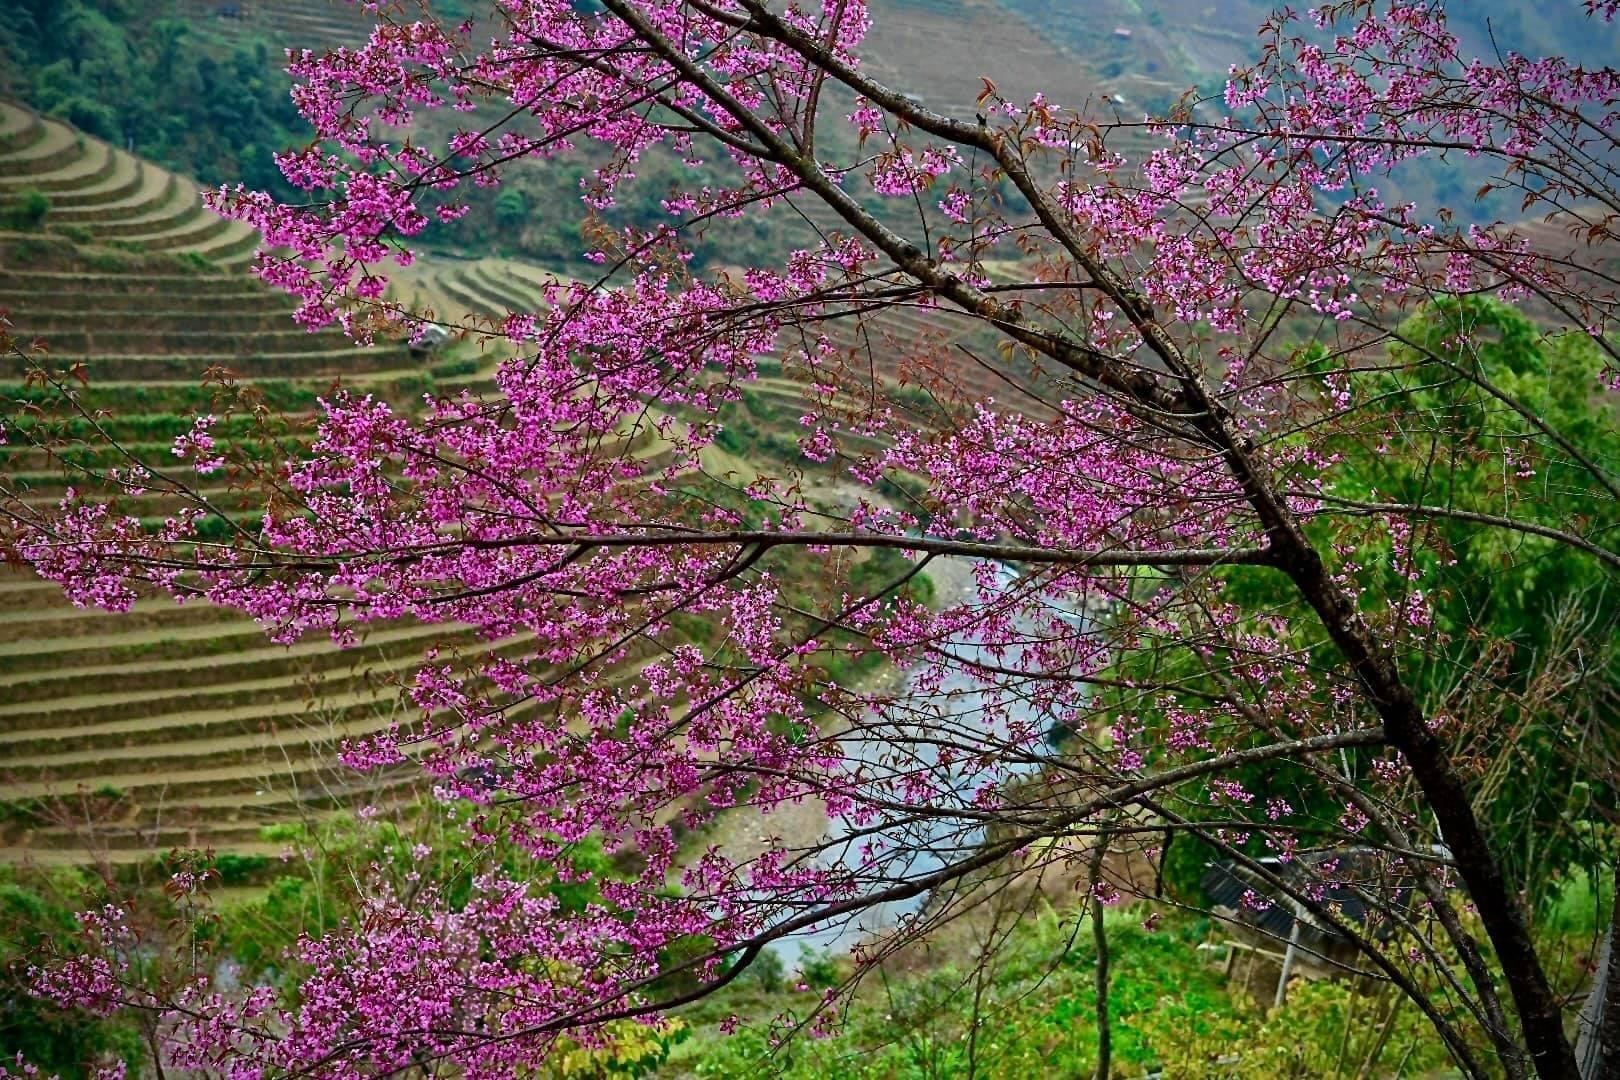 Chiêm ngưỡng sắc hoa tớ dày nhuộm hồng núi rừng Mù Cang Chải - 2